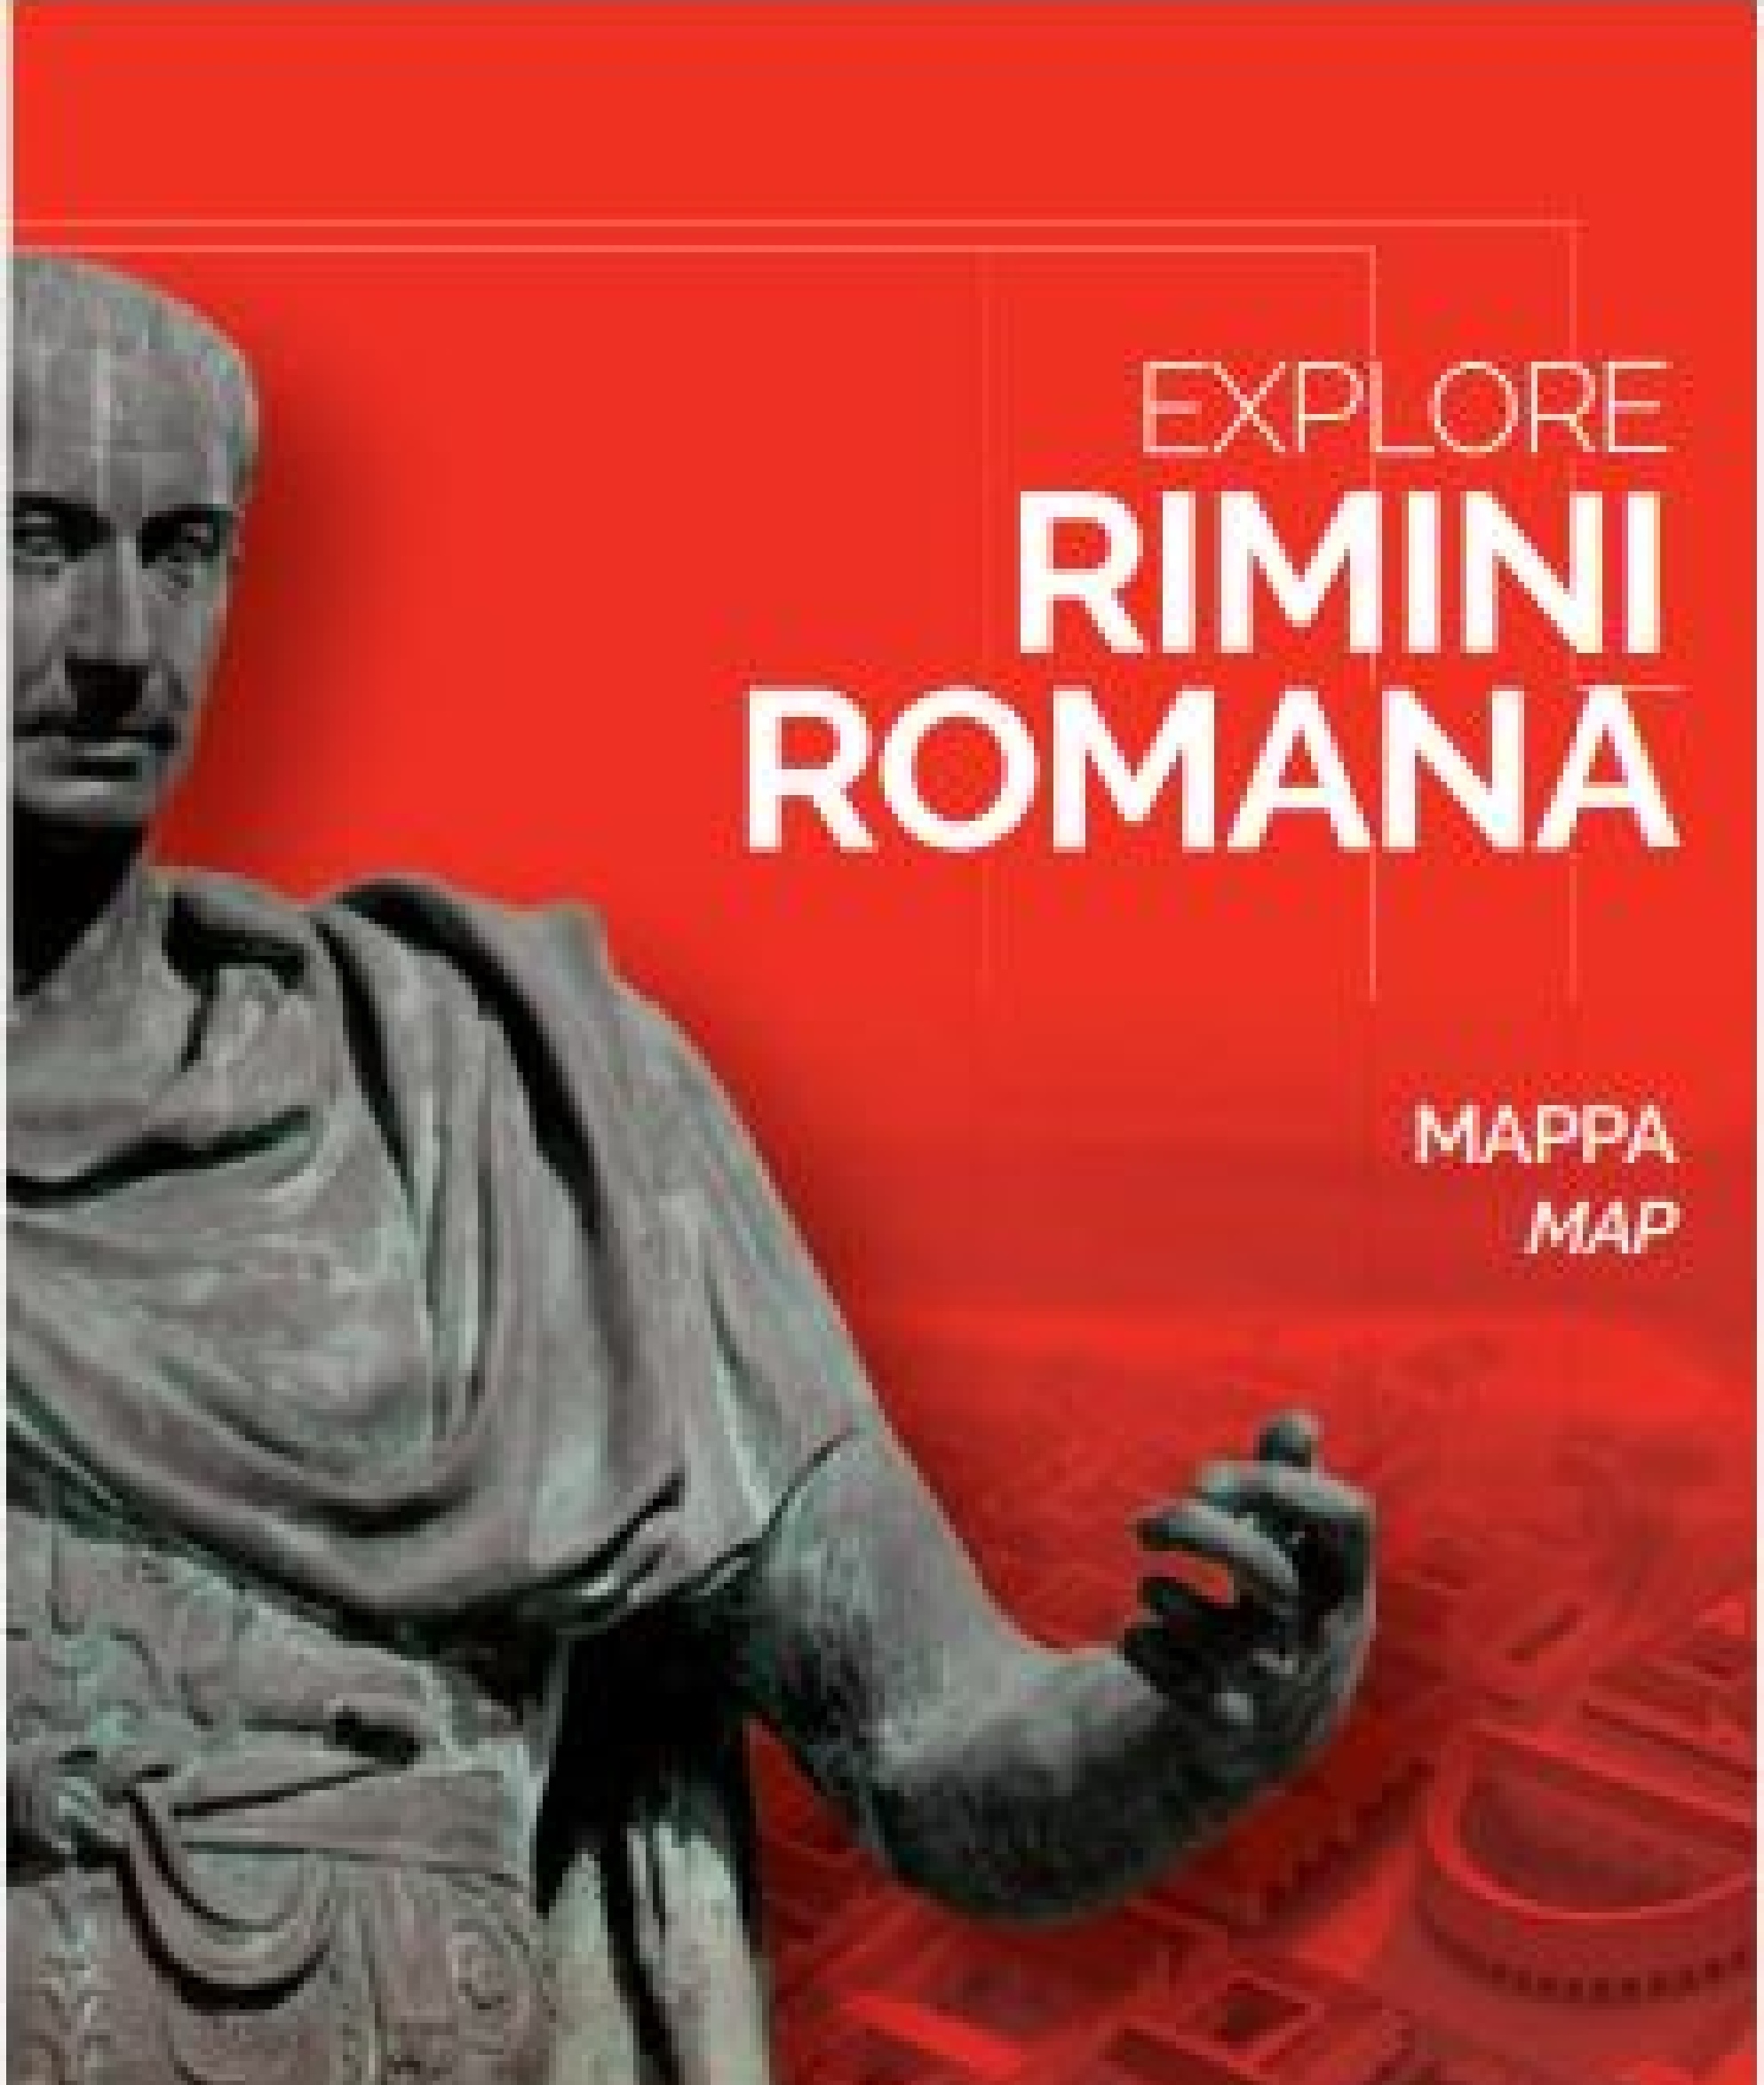 PDF: Explore Rimini Romana IT,EN 2.22M